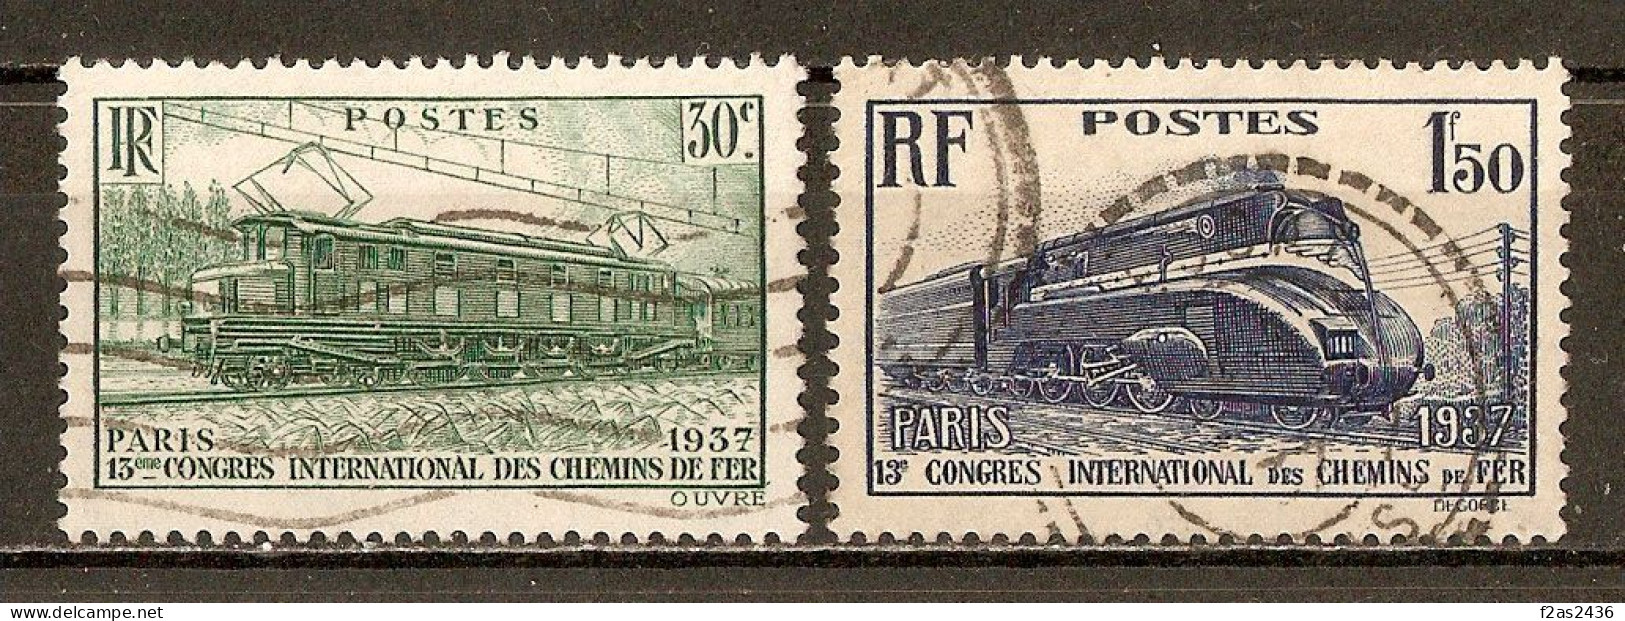 1937 - 13e Congrès International Des Chemins De Fer, à Paris - N°339/340 (cote 10€) - Oblitérés